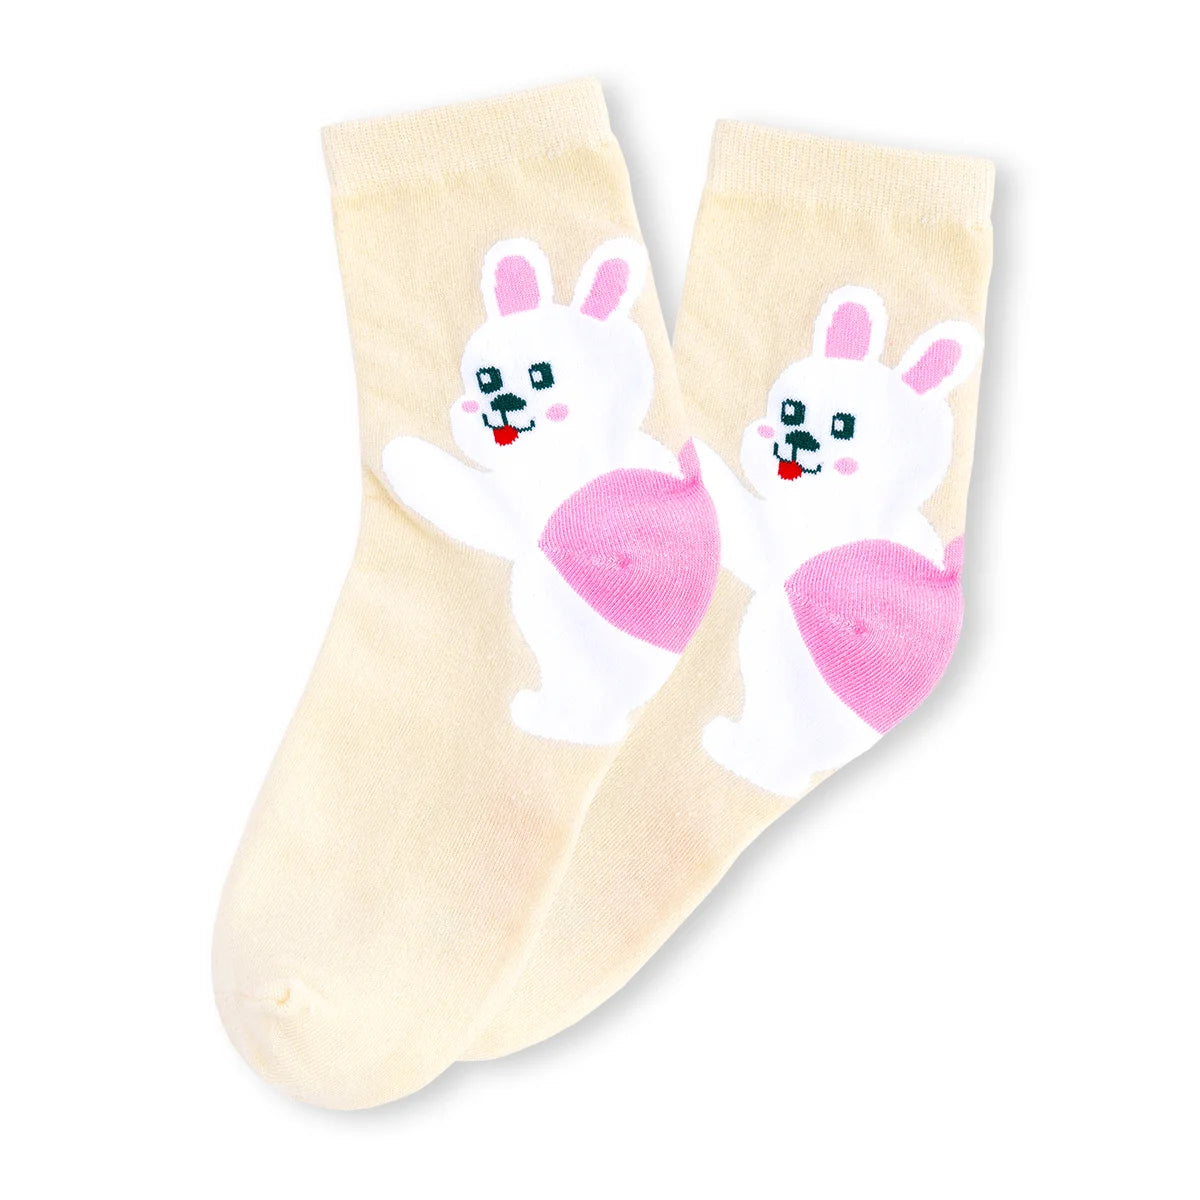 Chaussettes beige adultes en coton représentant un lapin sur le talon de la chaussette | Chaussettes douces et respirantes | Un excellent choix pour les adultes qui aiment les animaux